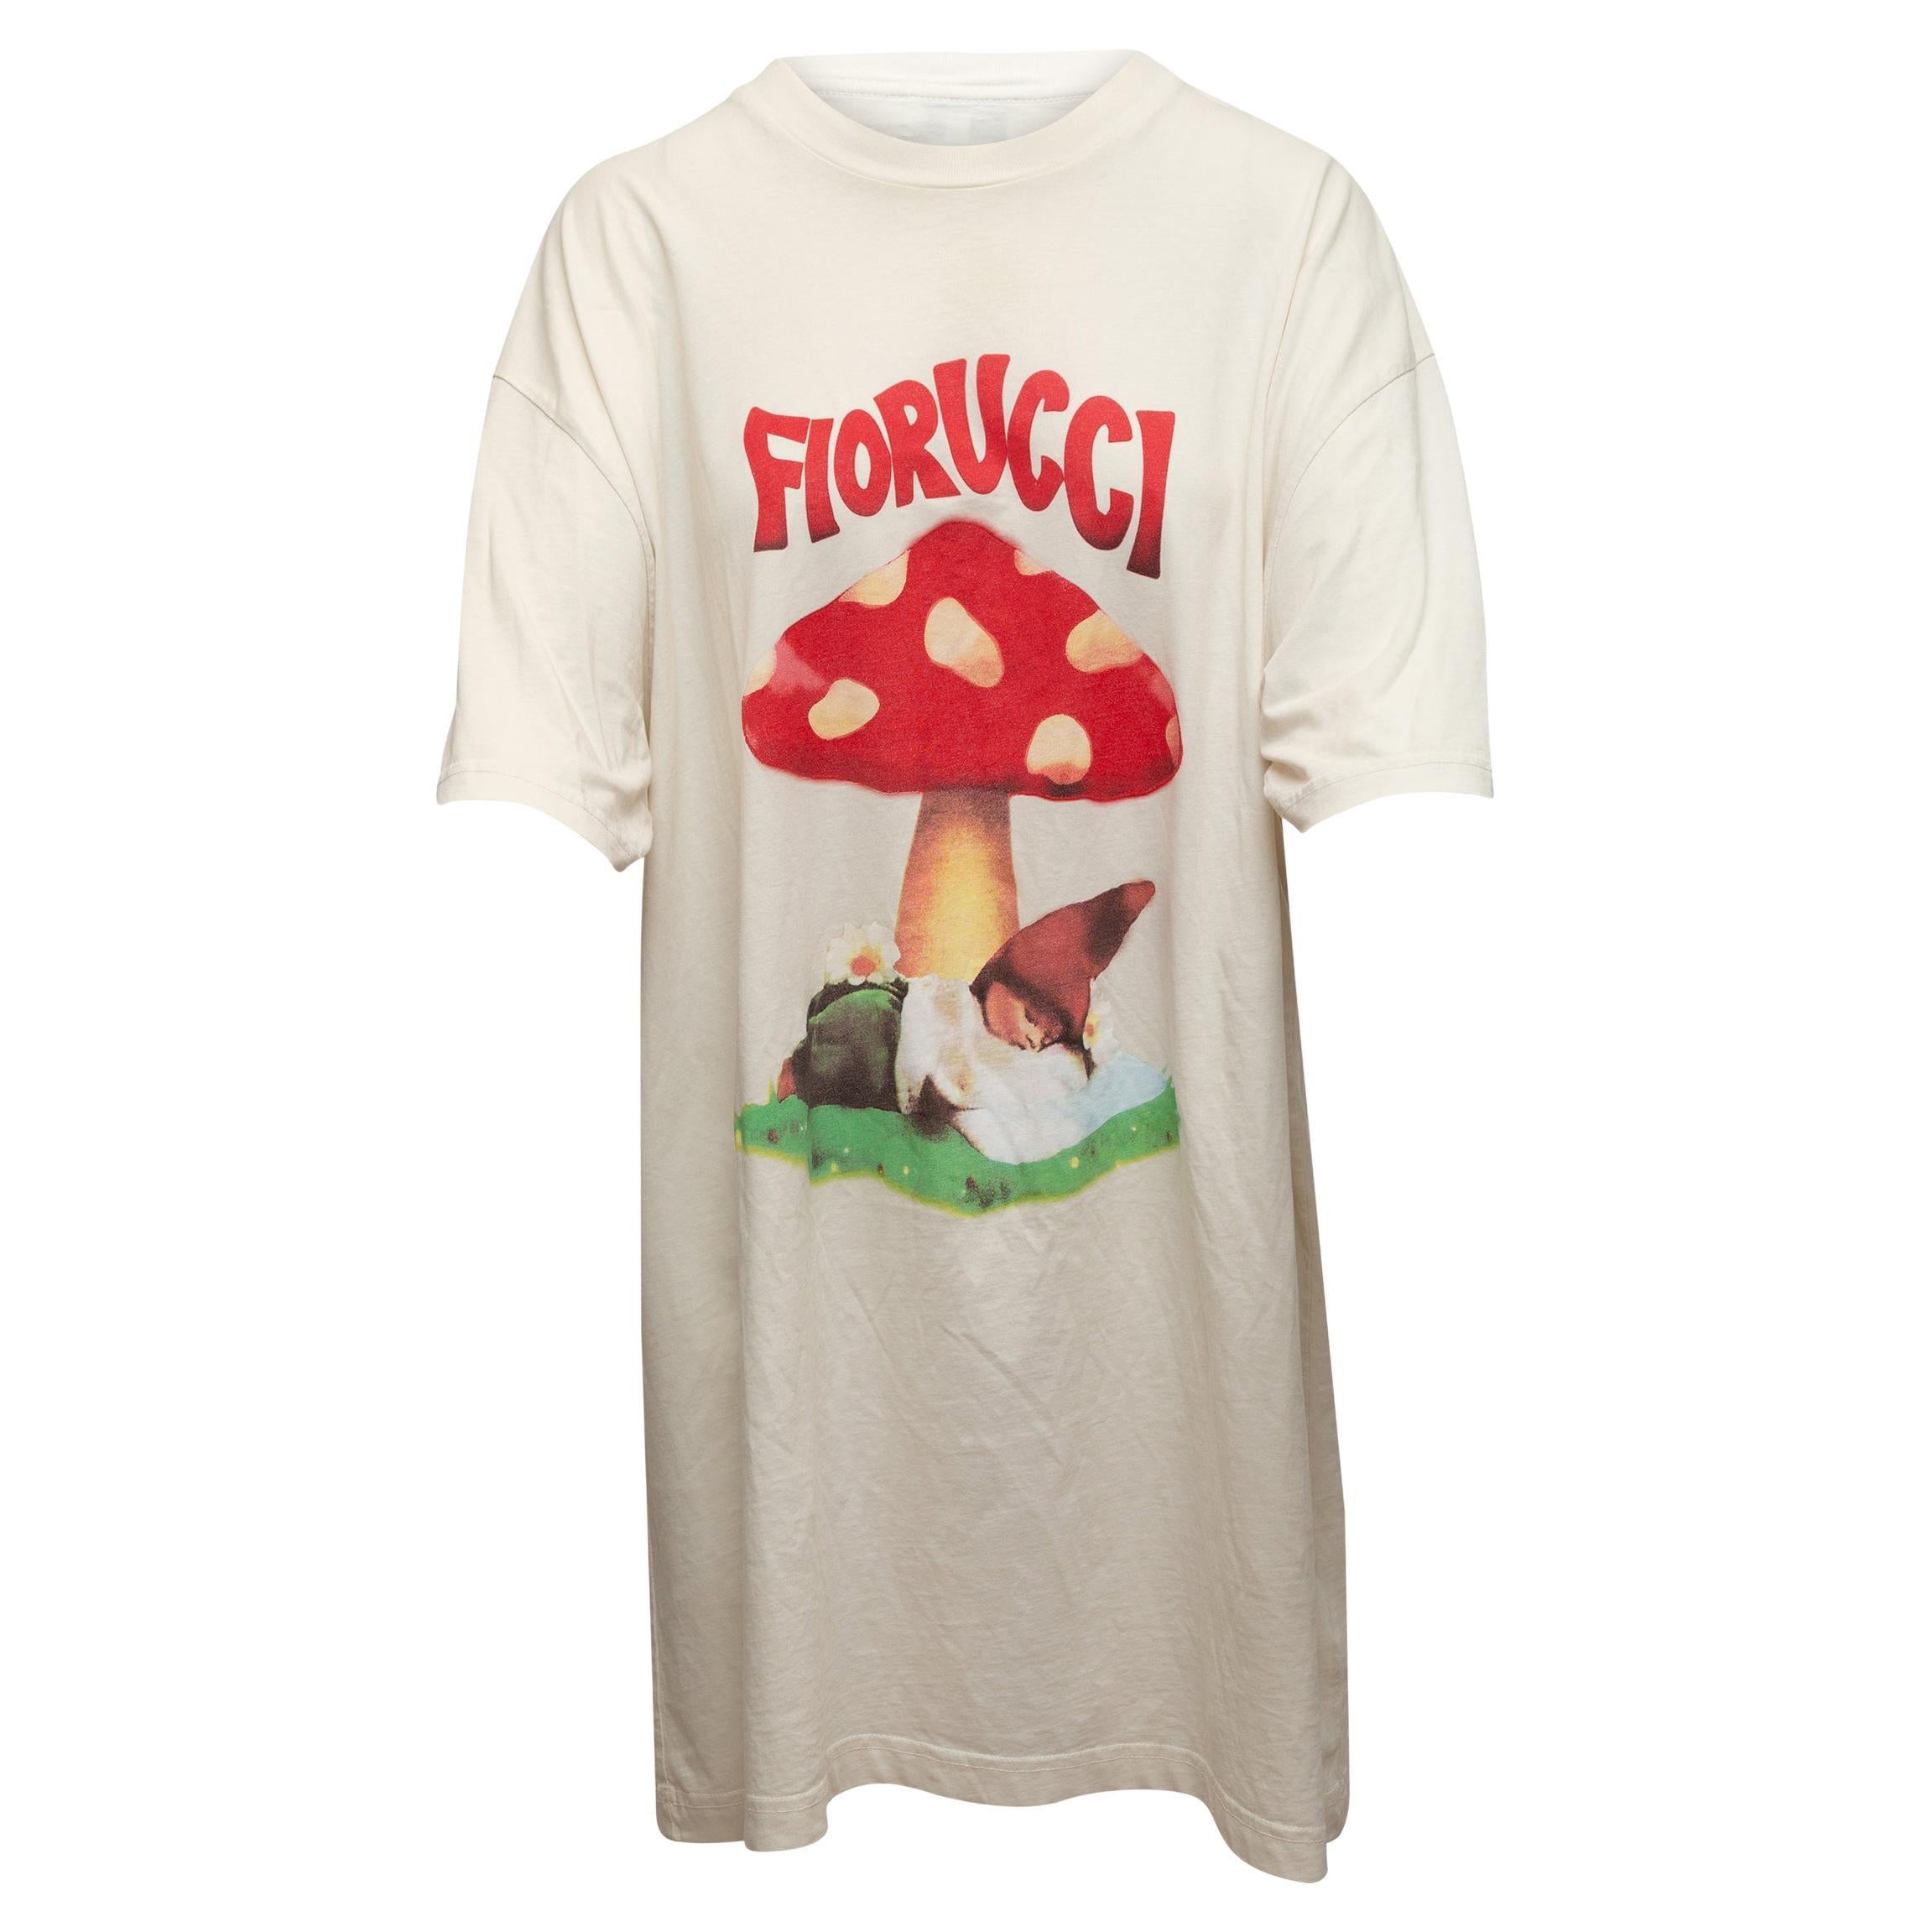 Fiorucci White & Multicolor Mushroom Print Graphic T-Shirt